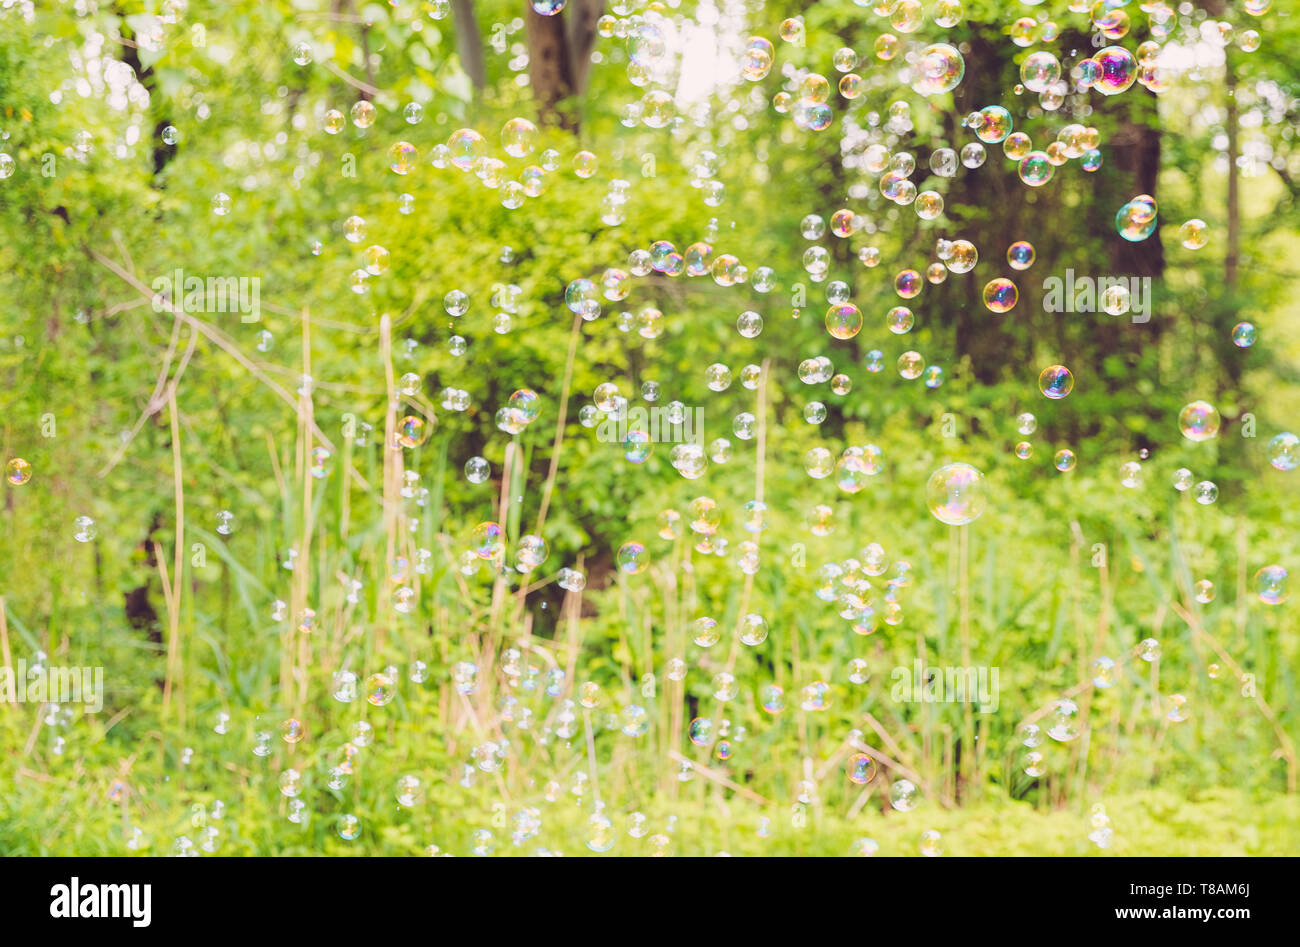 Der Regenbogen Luftblasen von Bubble blower-Image Stockfoto